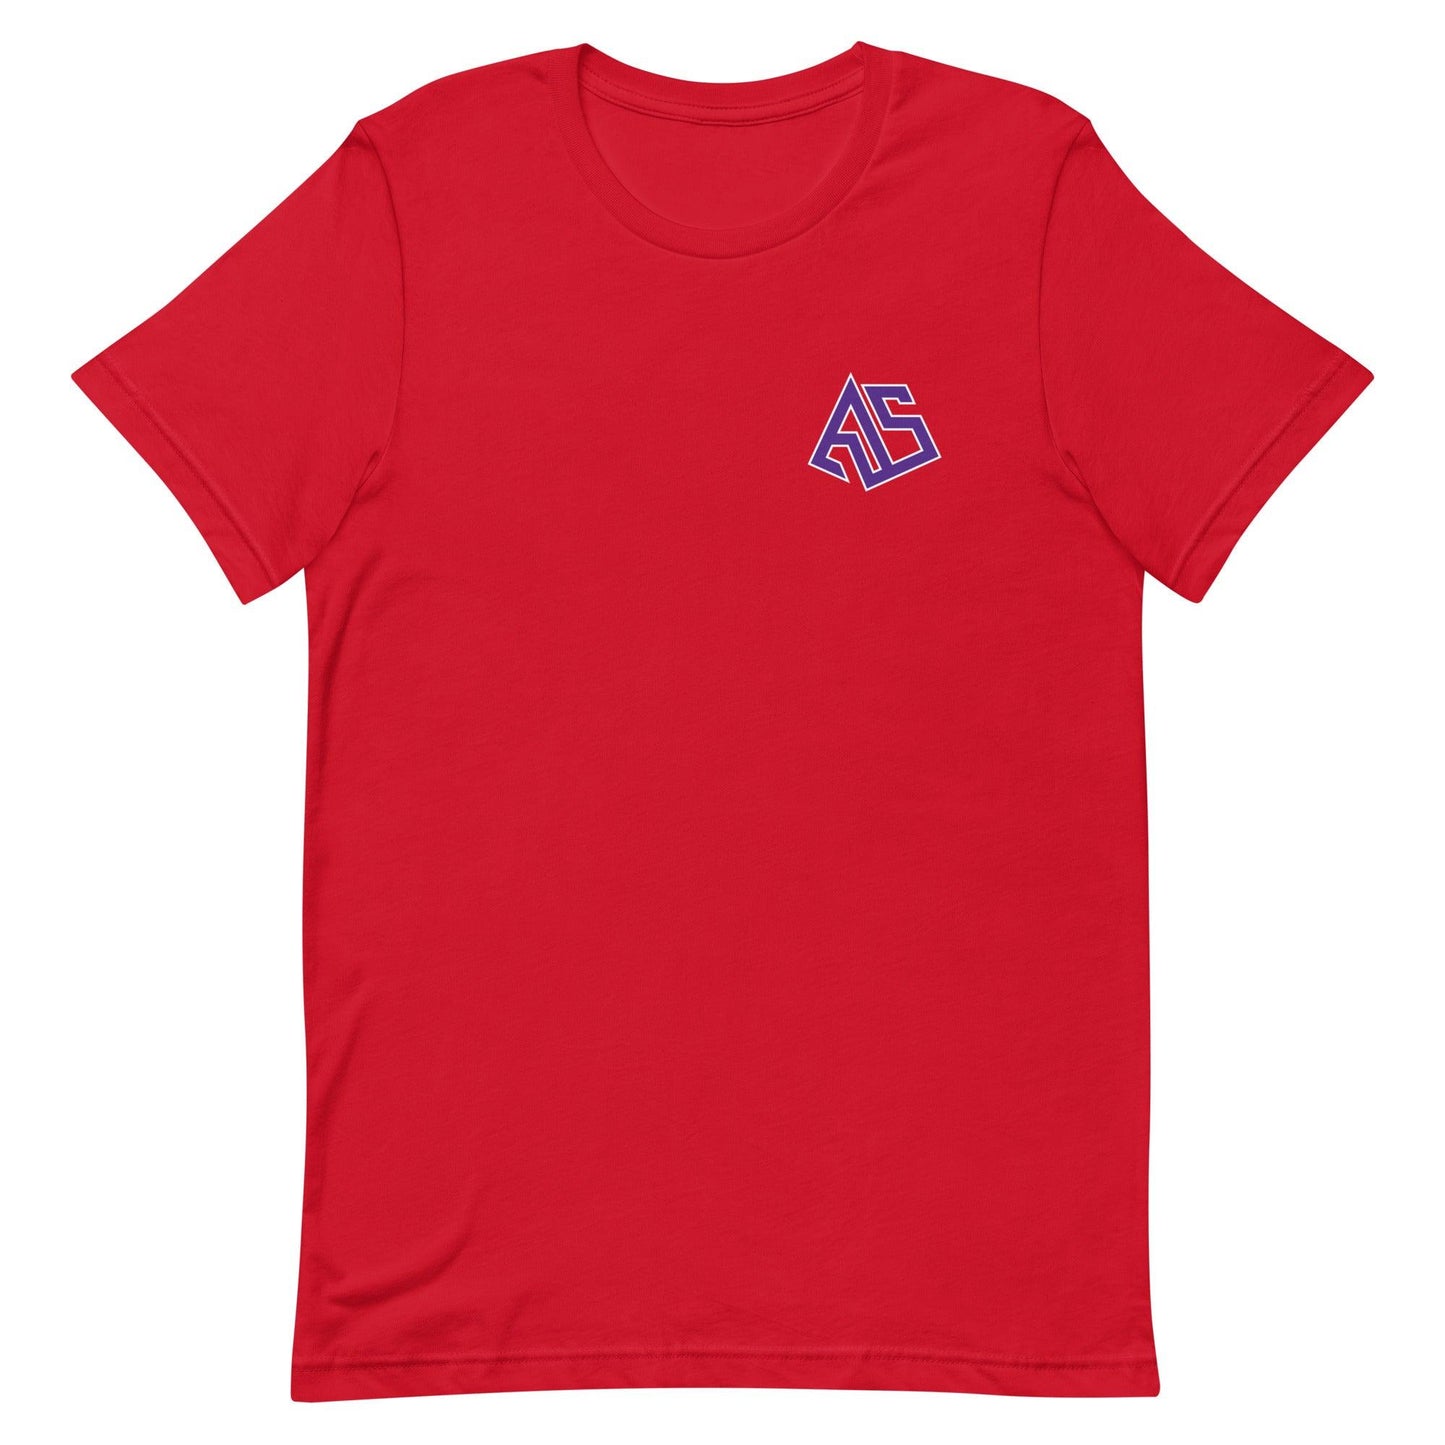 Asa Newsom "Essential" t-shirt - Fan Arch